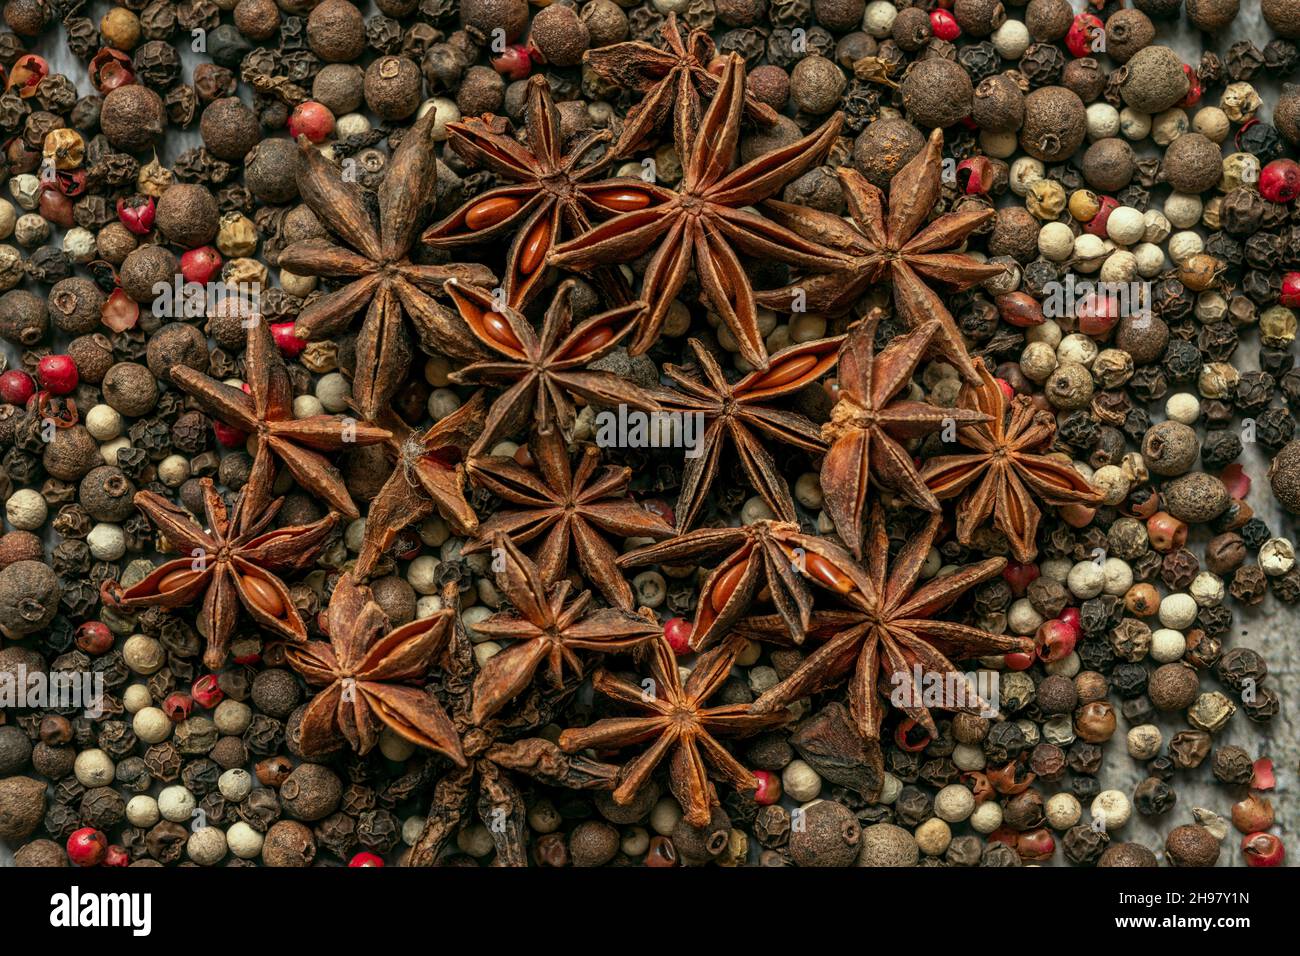 Ilicium verum, anis étoilé, anis étoilé, anis étoilé chinois, badian,badian ou Chine badian, est une épice obtenue à partir de la péricarpe de la forme en étoile f Banque D'Images